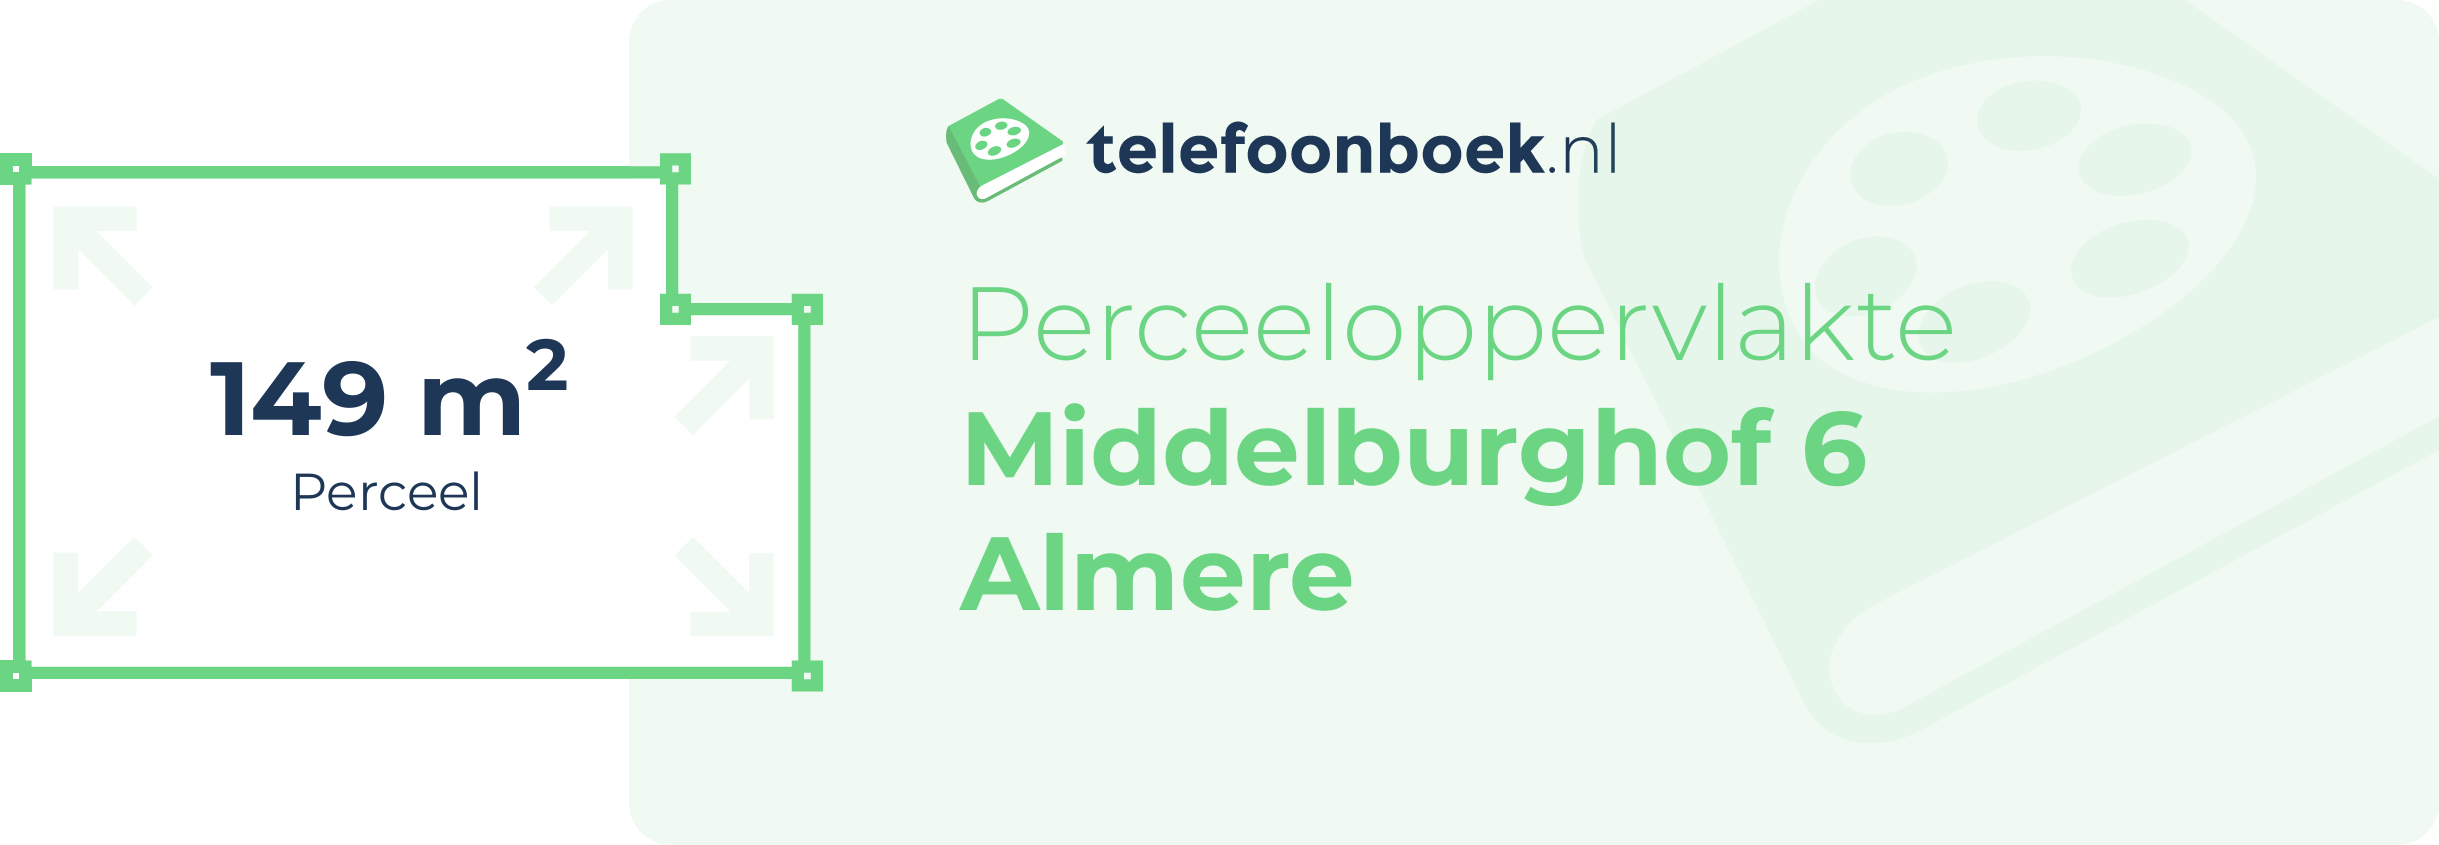 Perceeloppervlakte Middelburghof 6 Almere